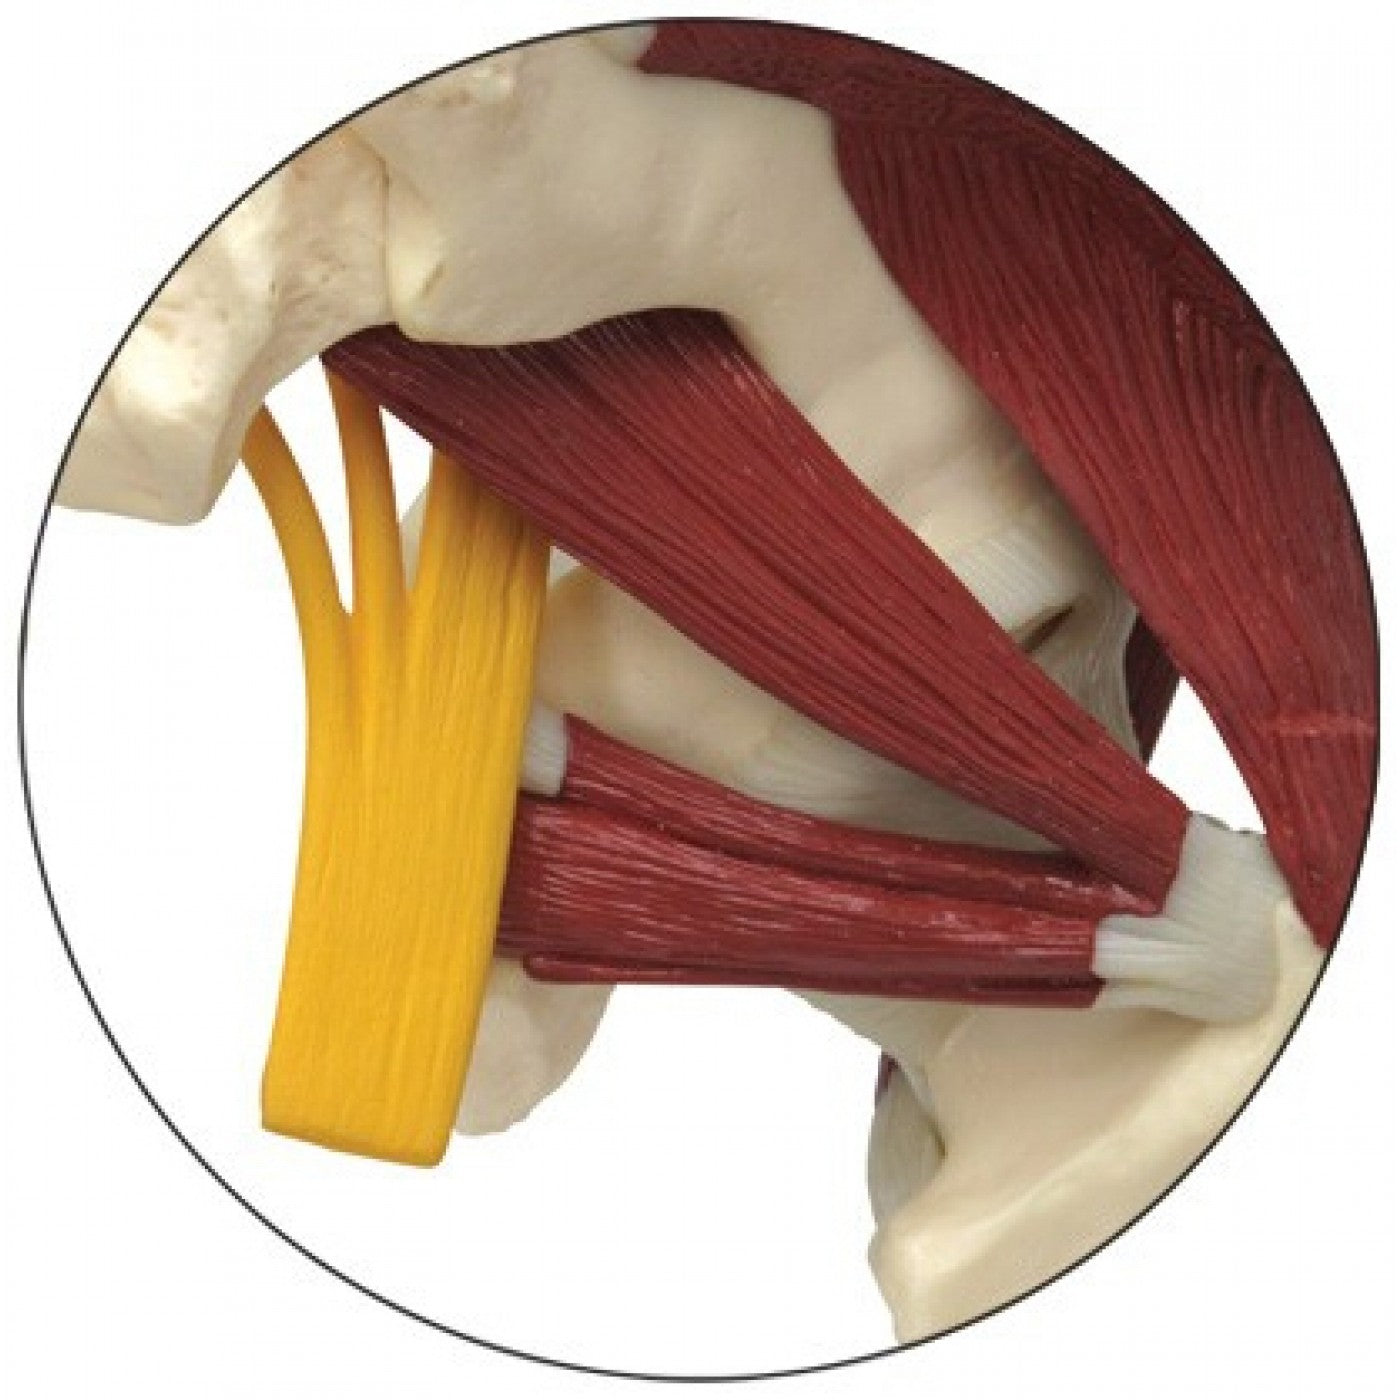 Komplett höftmodell med 2 ländkotor, ligament, muskler och ischiasnerven